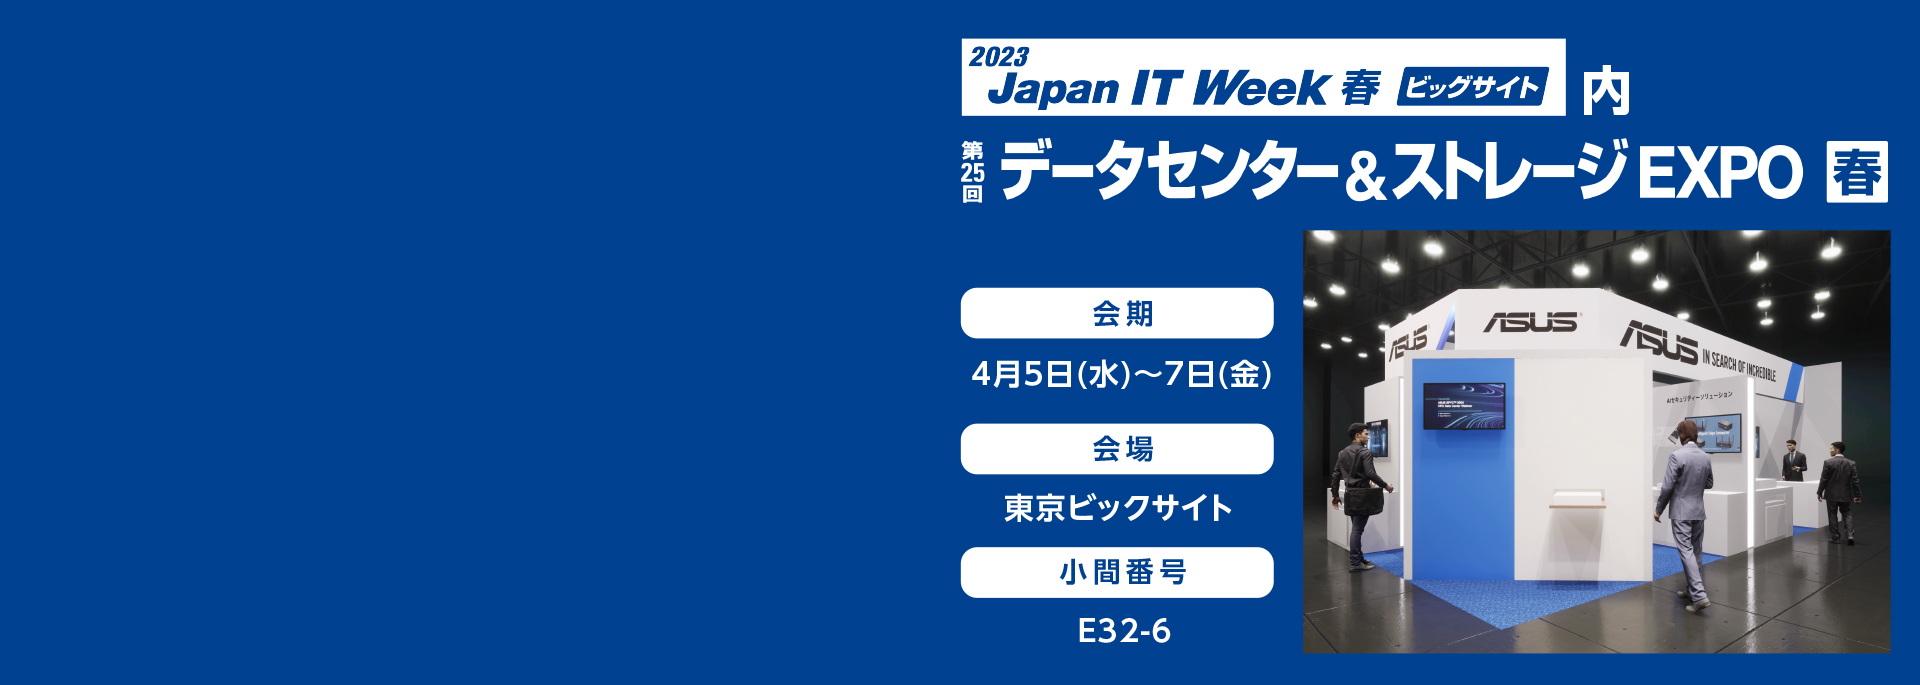 Japan IT Week Spring